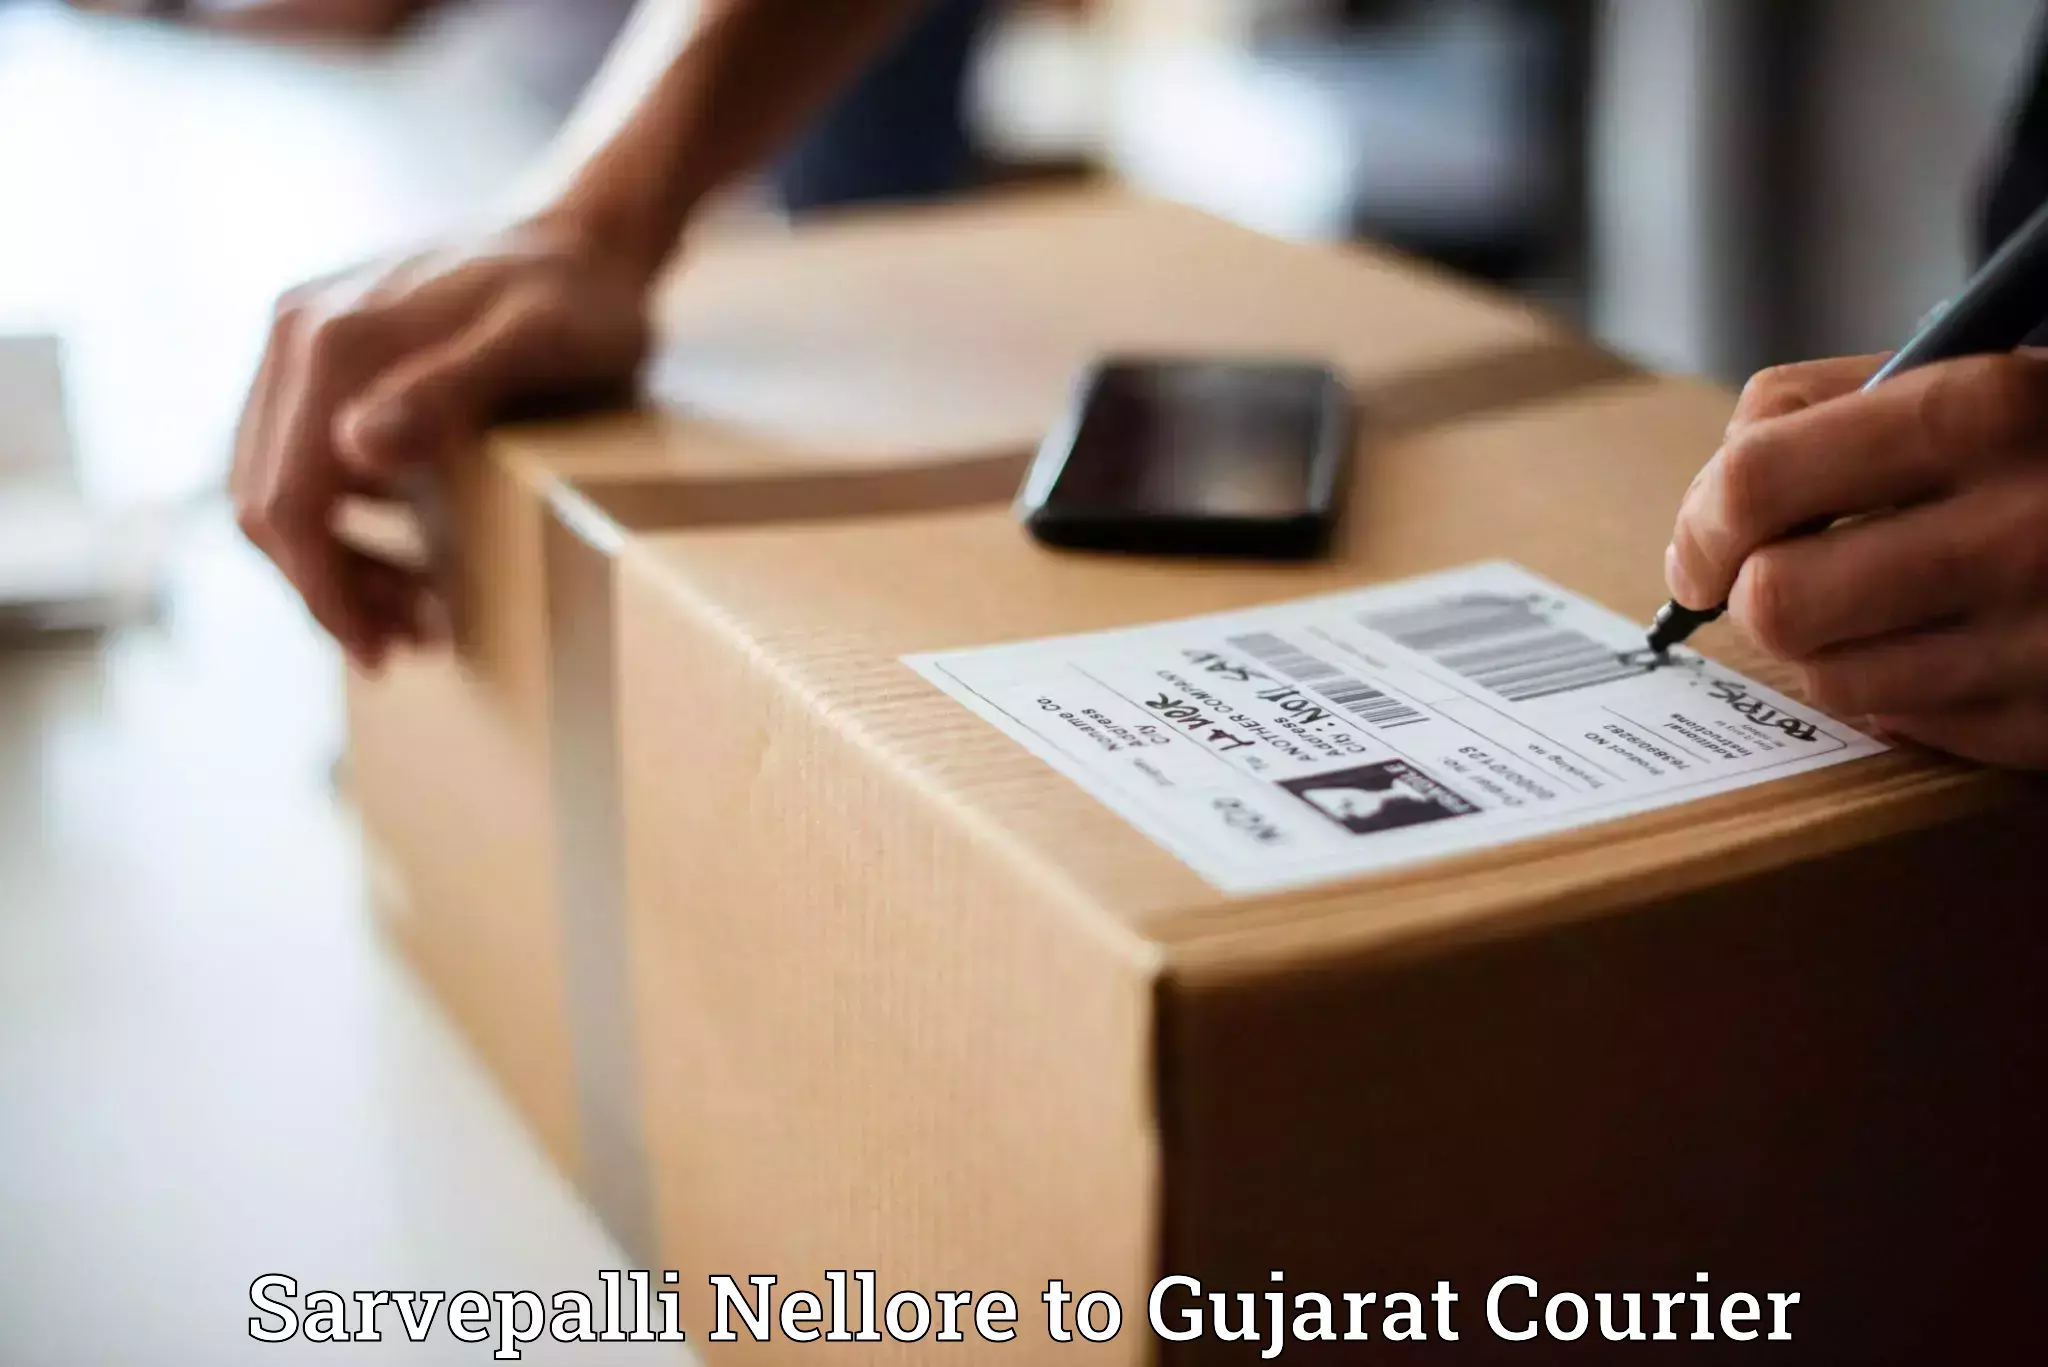 Fastest parcel delivery Sarvepalli Nellore to Bodeli